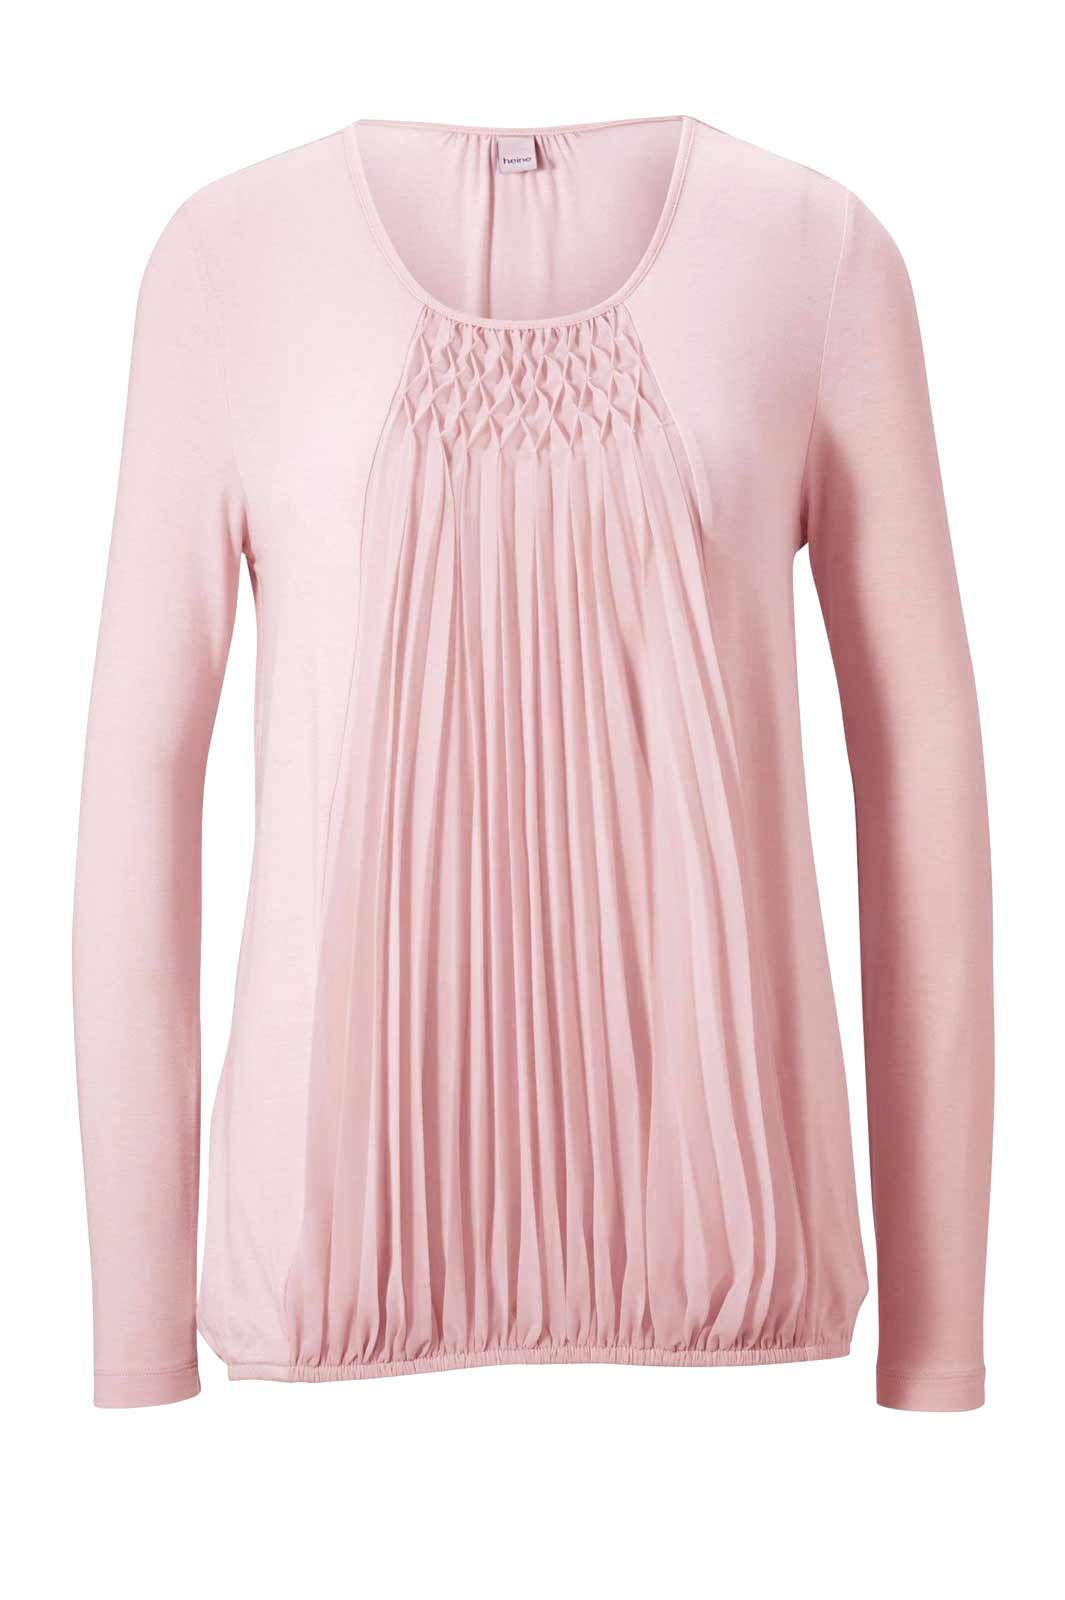 Heine Damen Jerseyshirt mit Chiffon, rosé